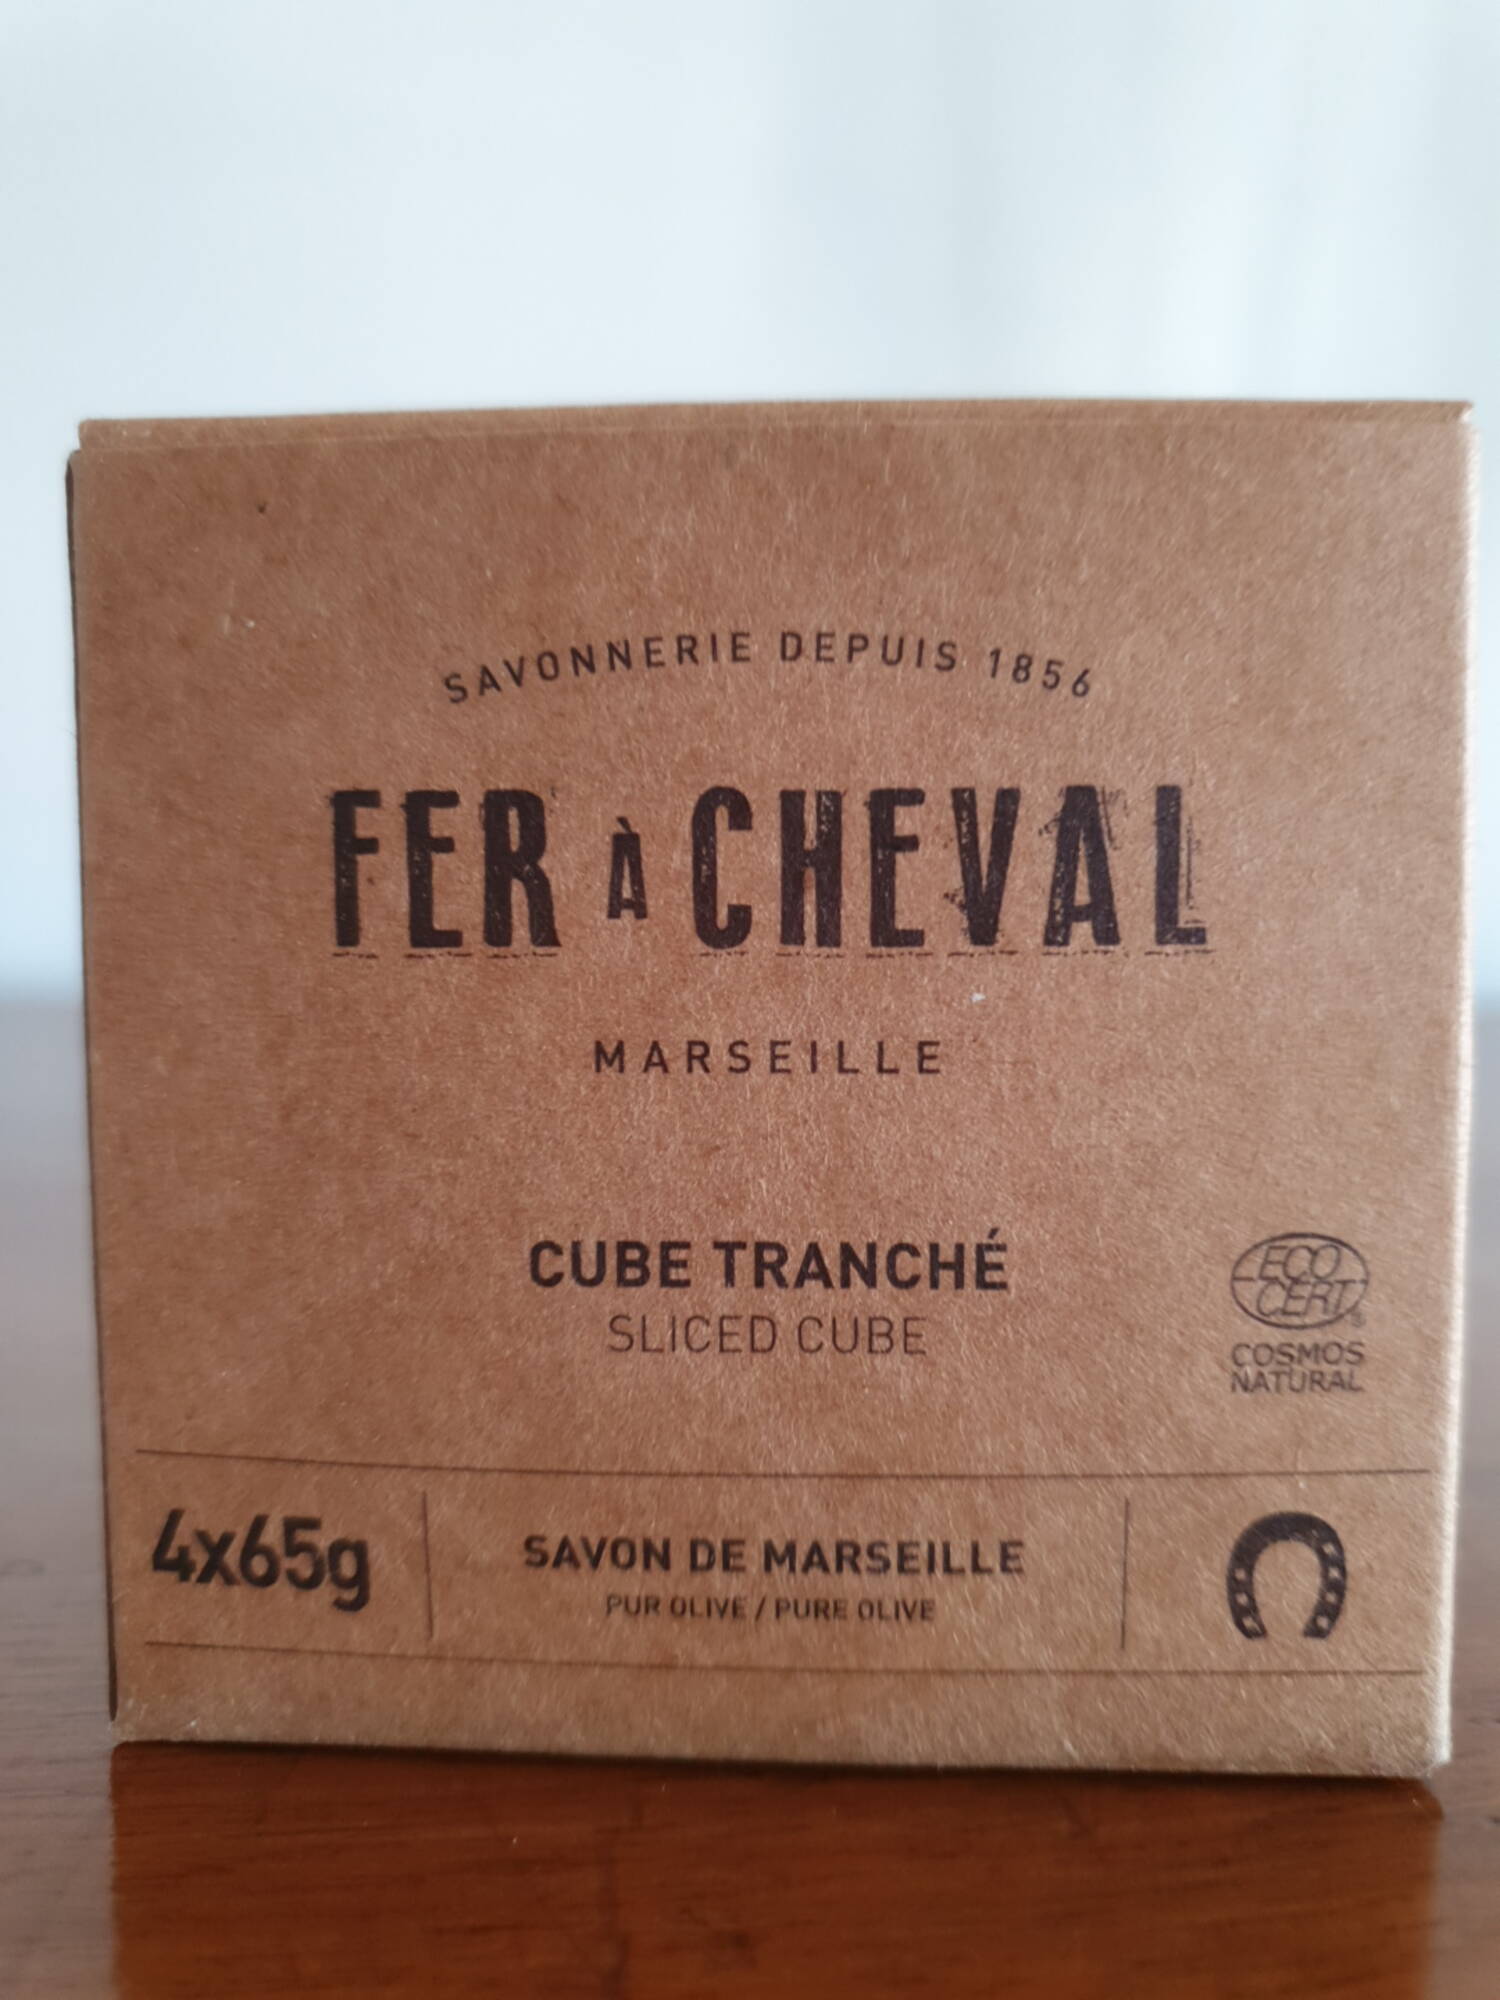 FER À CHEVAL - Cube tranché - Savon de Marseille